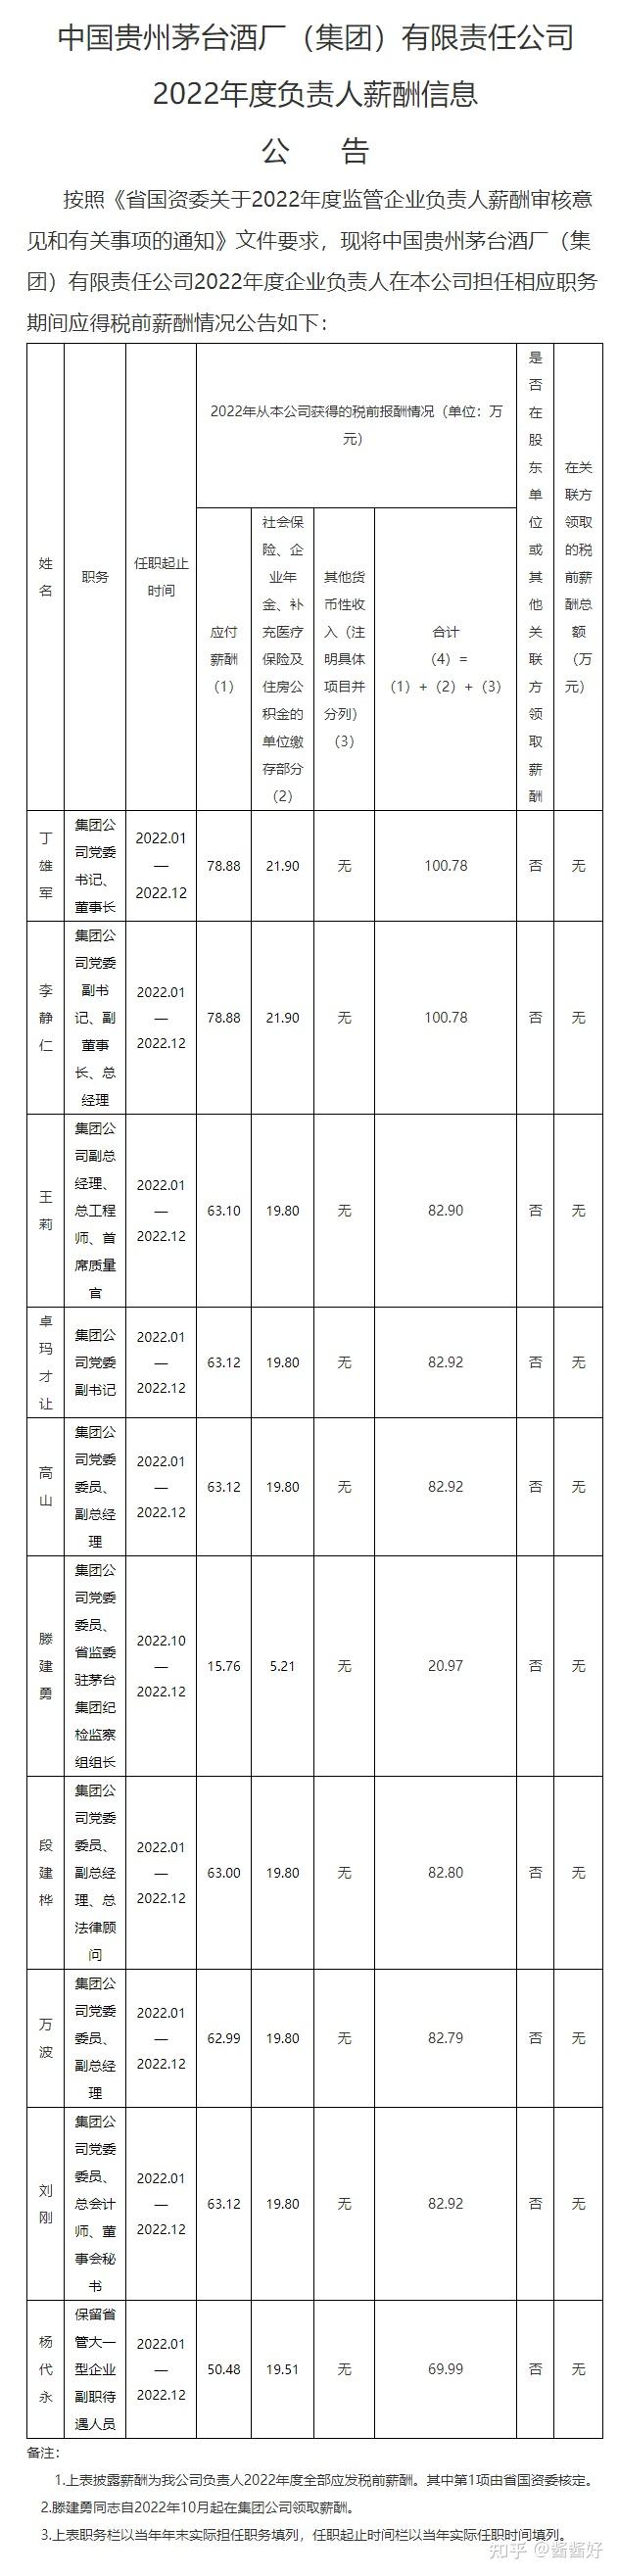 最新茅台集团公布高管工资条董事长丁雄军税前收入为100万元